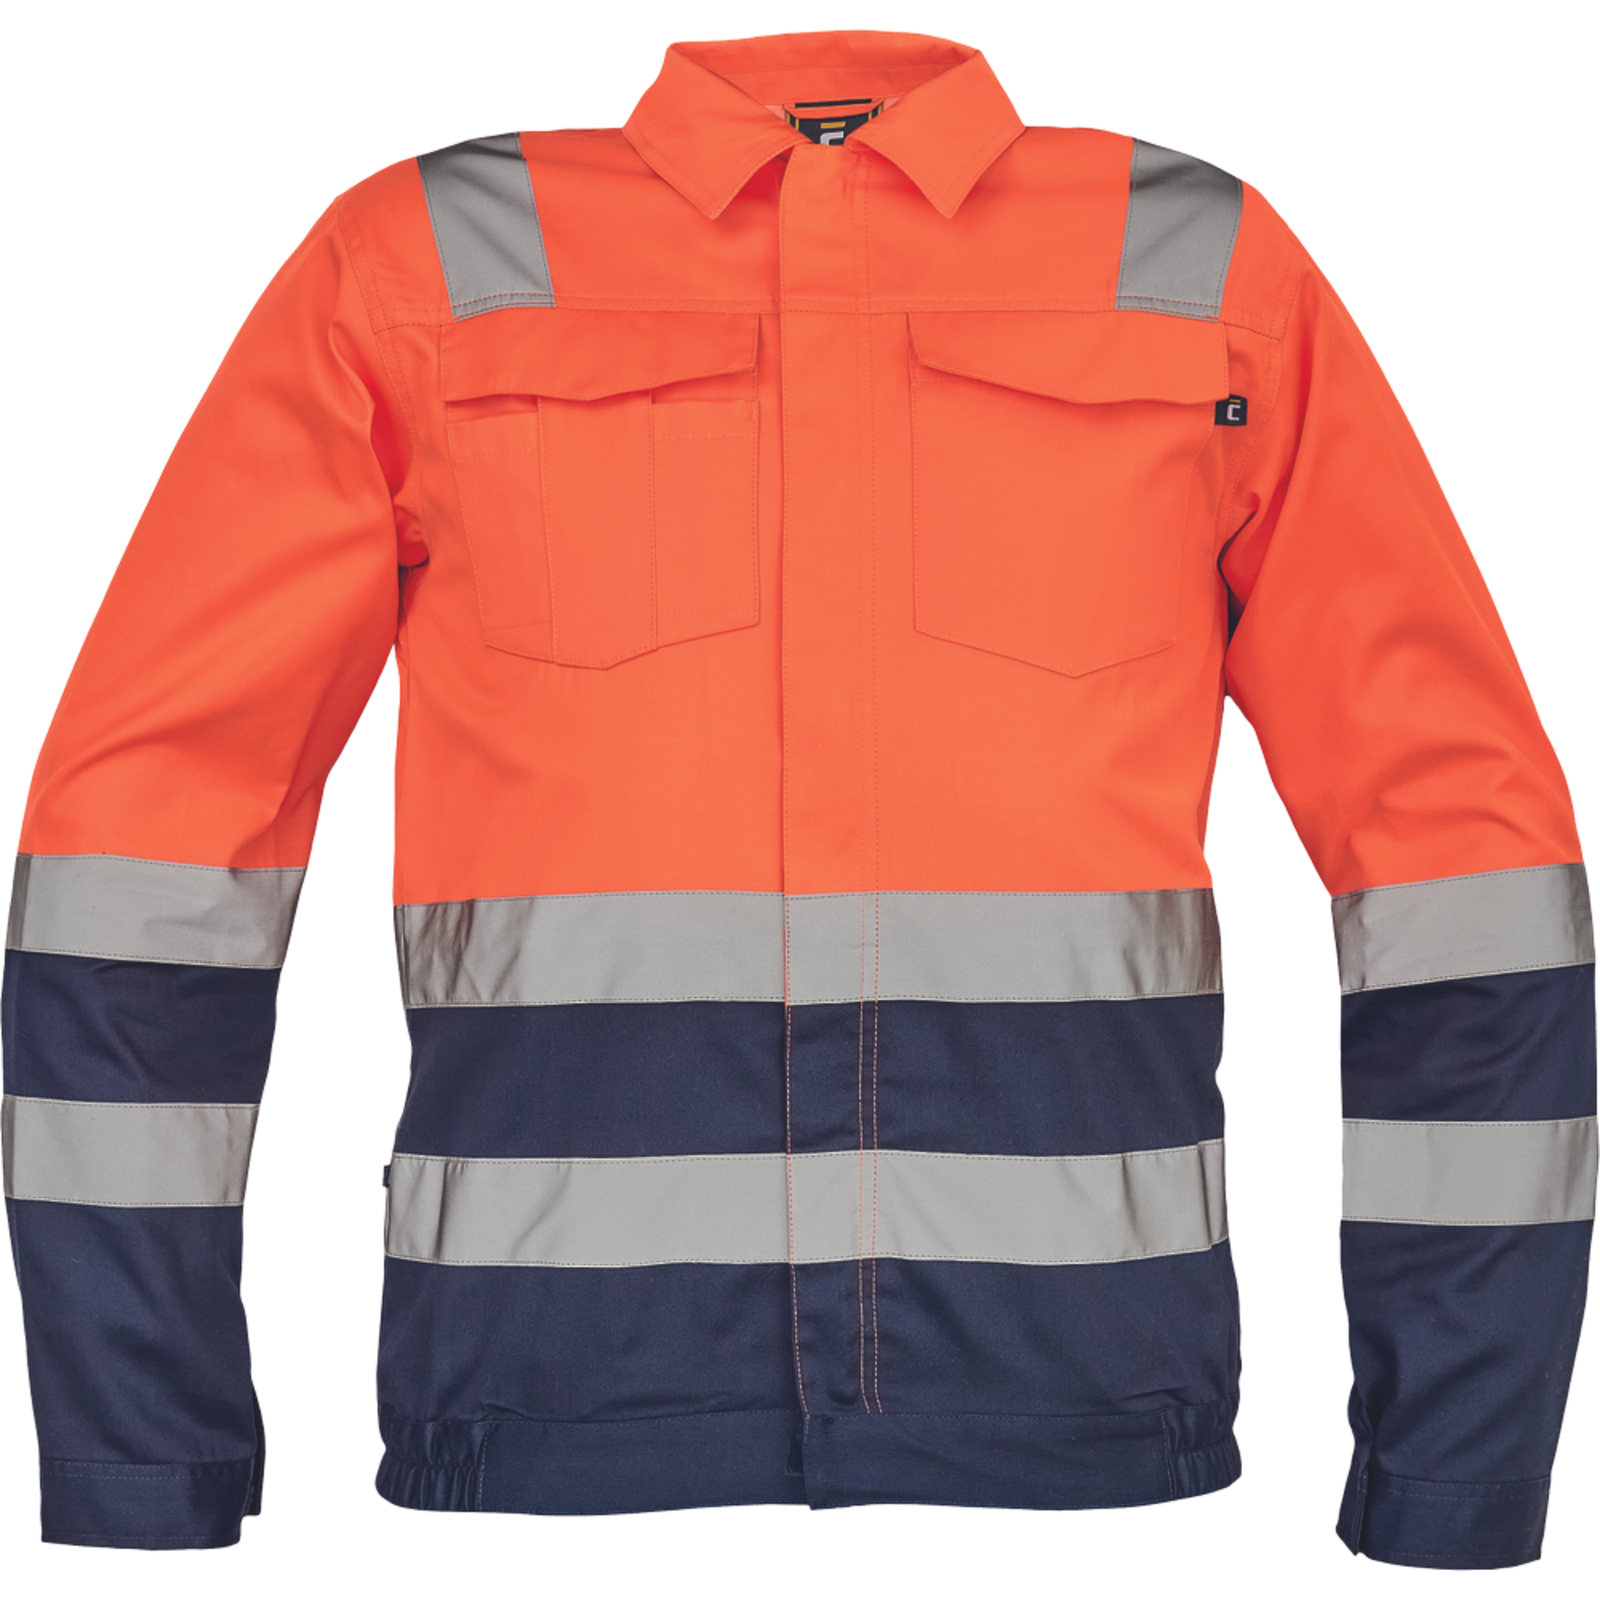 Reflexná pracovná bunda Cerva Valencia HV - veľkosť: 48, farba: oranžová/navy